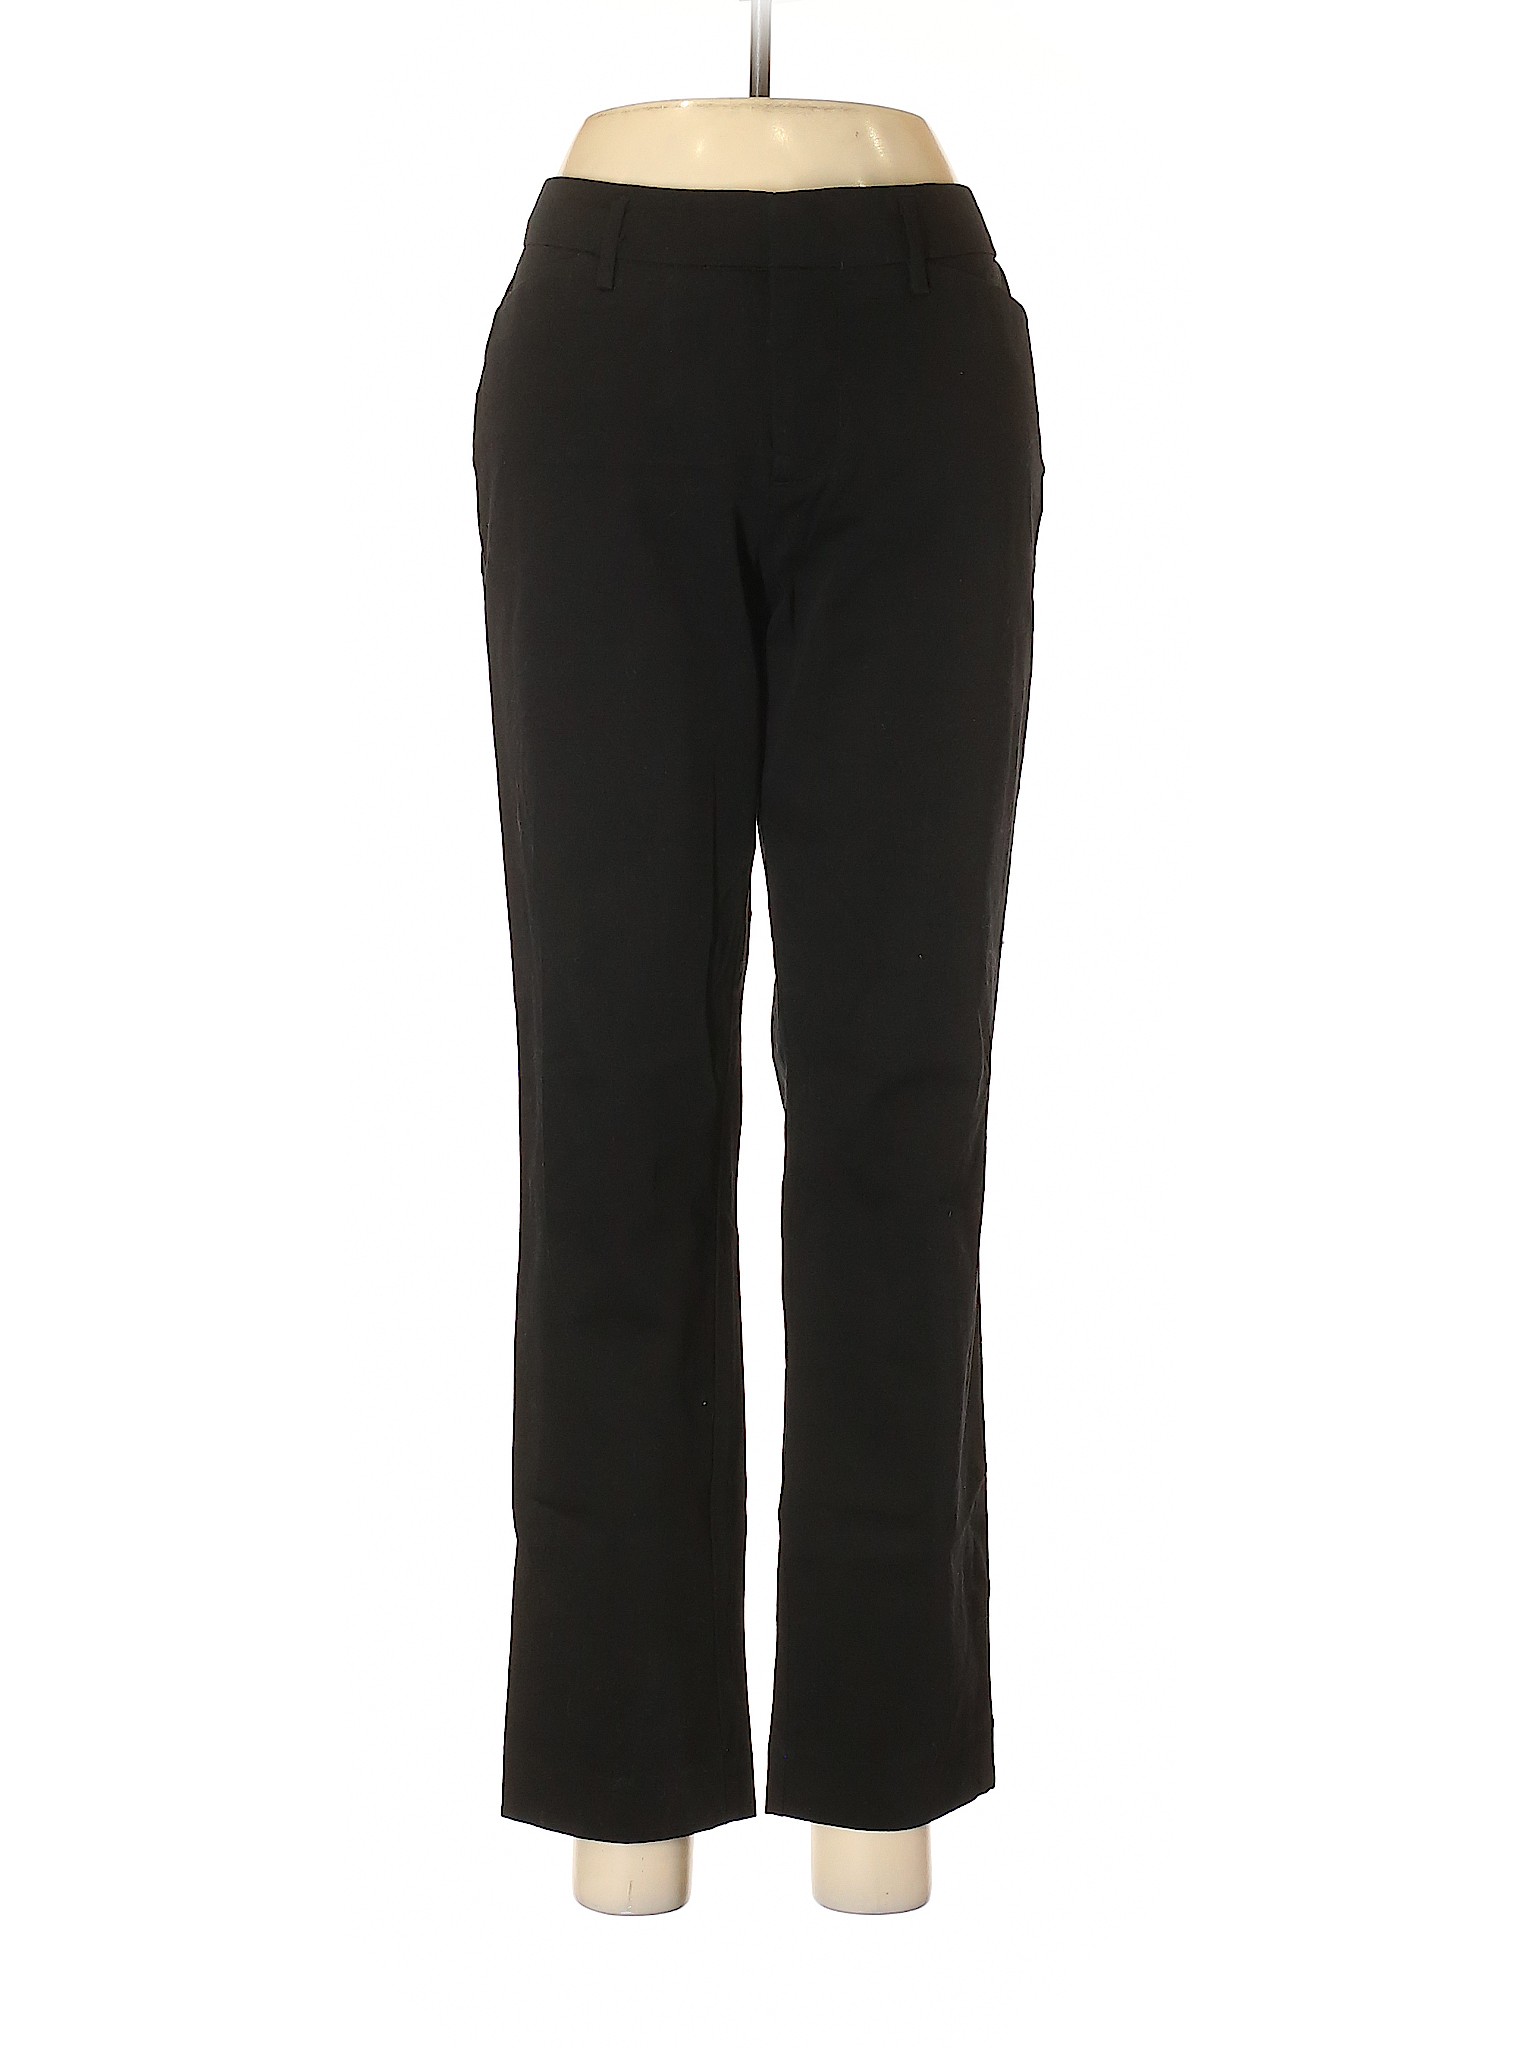 Stylus Women Black Casual Pants 8 | eBay